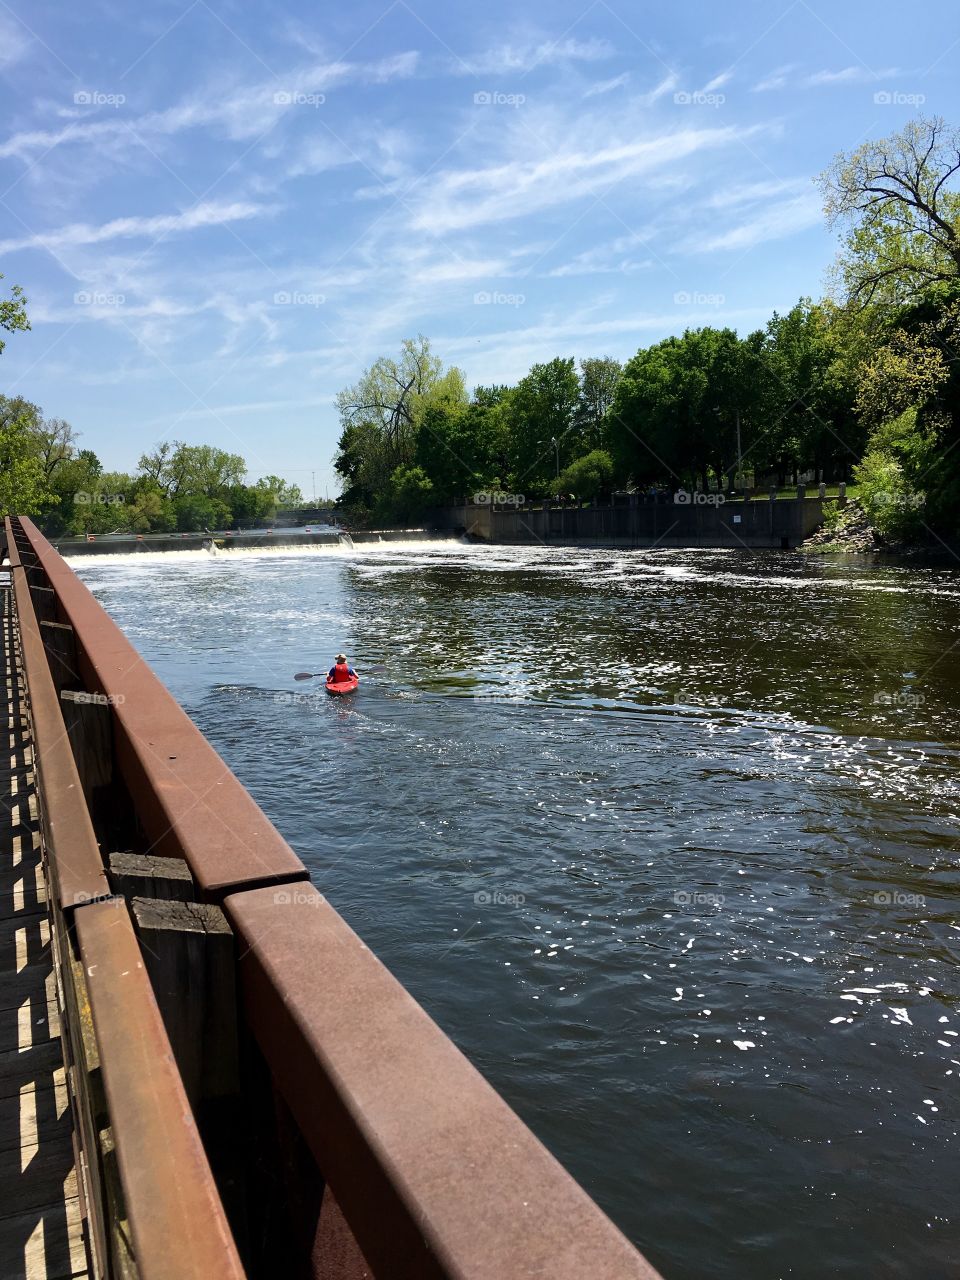 Kayaking on River 